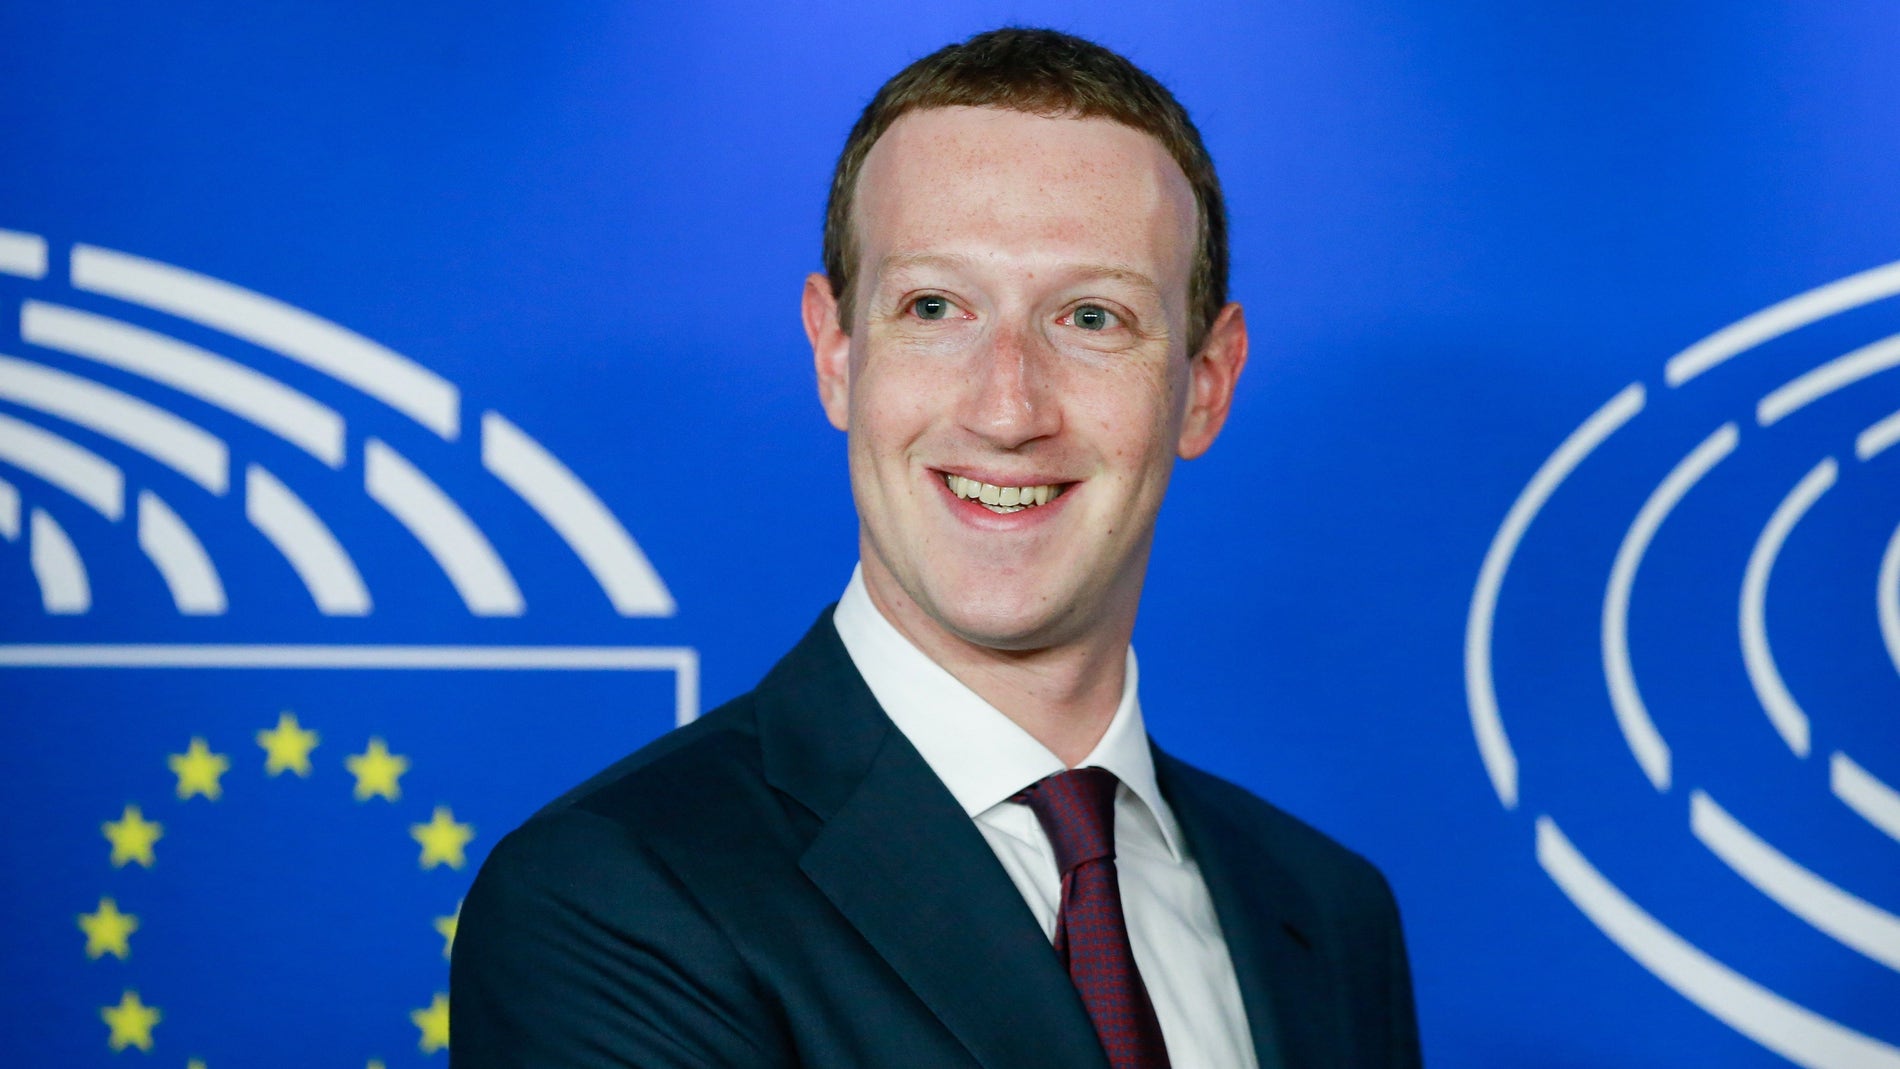 El fundador de Facebook, Mark Zuckerberg